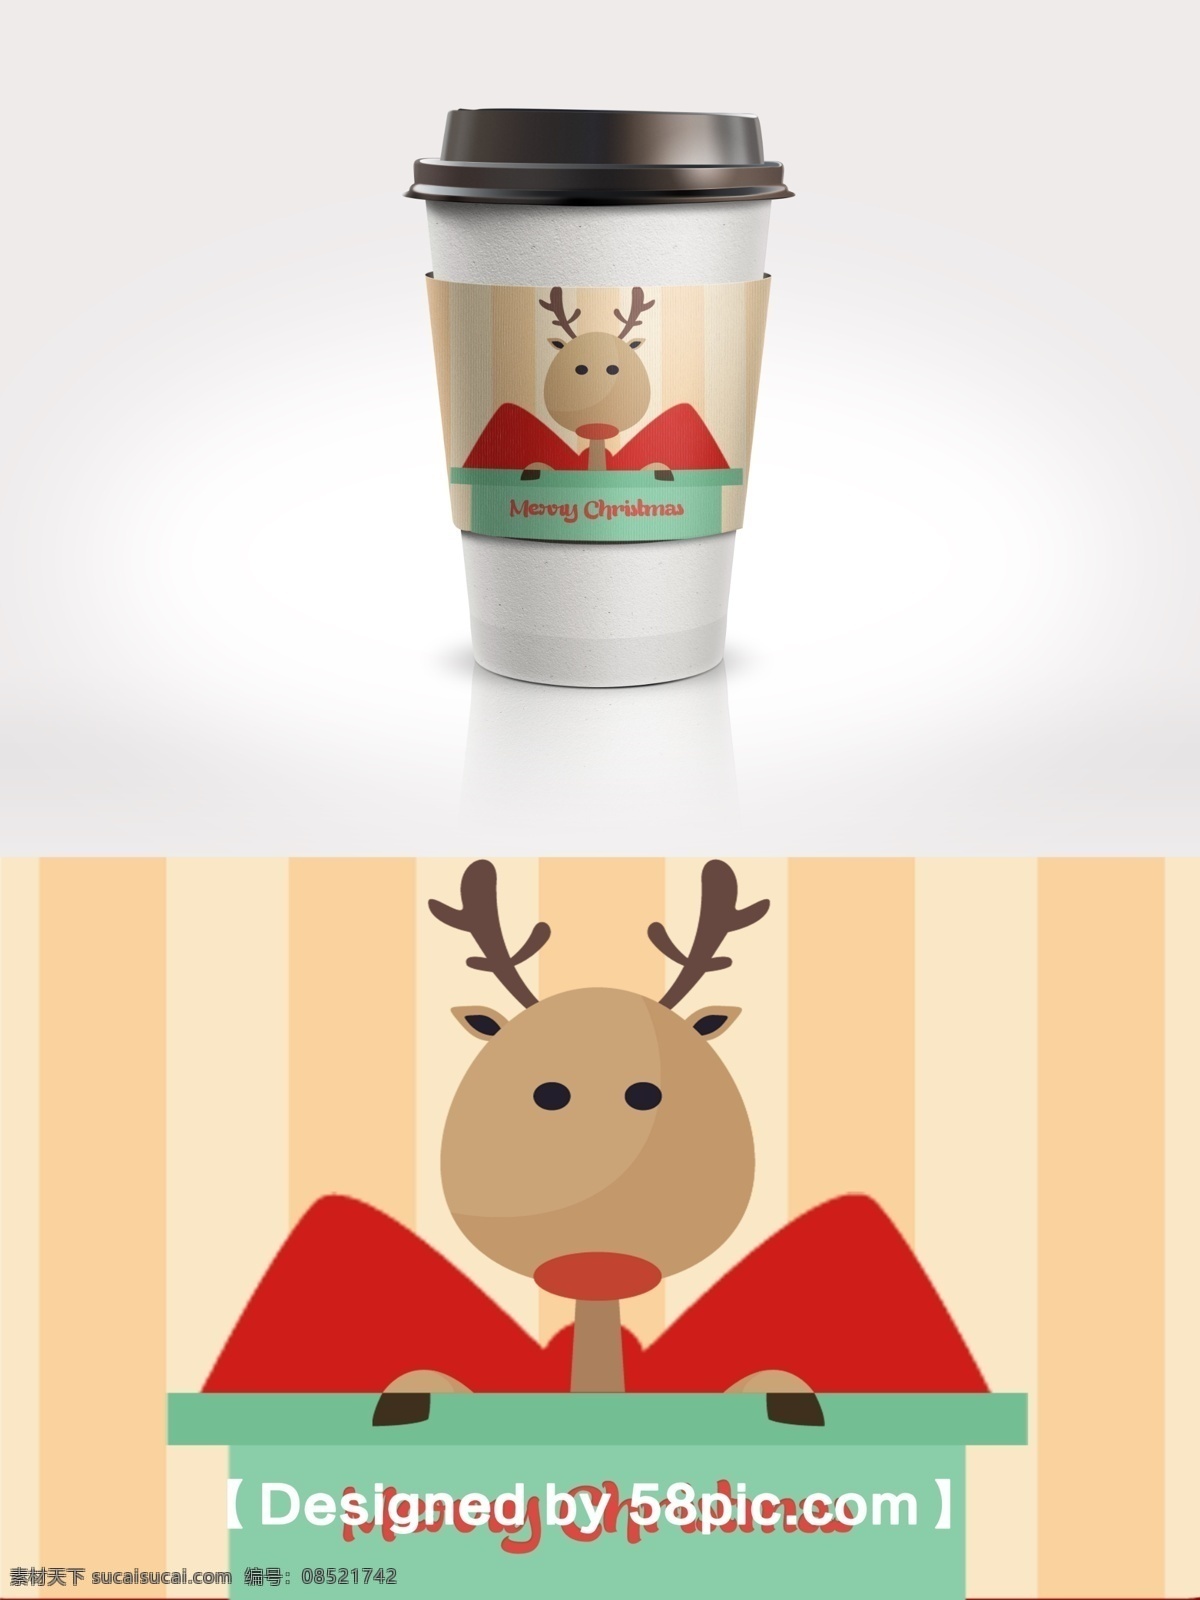 绿色 简约 大气 圣诞节 麋鹿 咖啡杯 套 psd素材 广告设计模版 蝴蝶结 简约大气 咖啡杯套设计 麋鹿素材 圣诞节素材